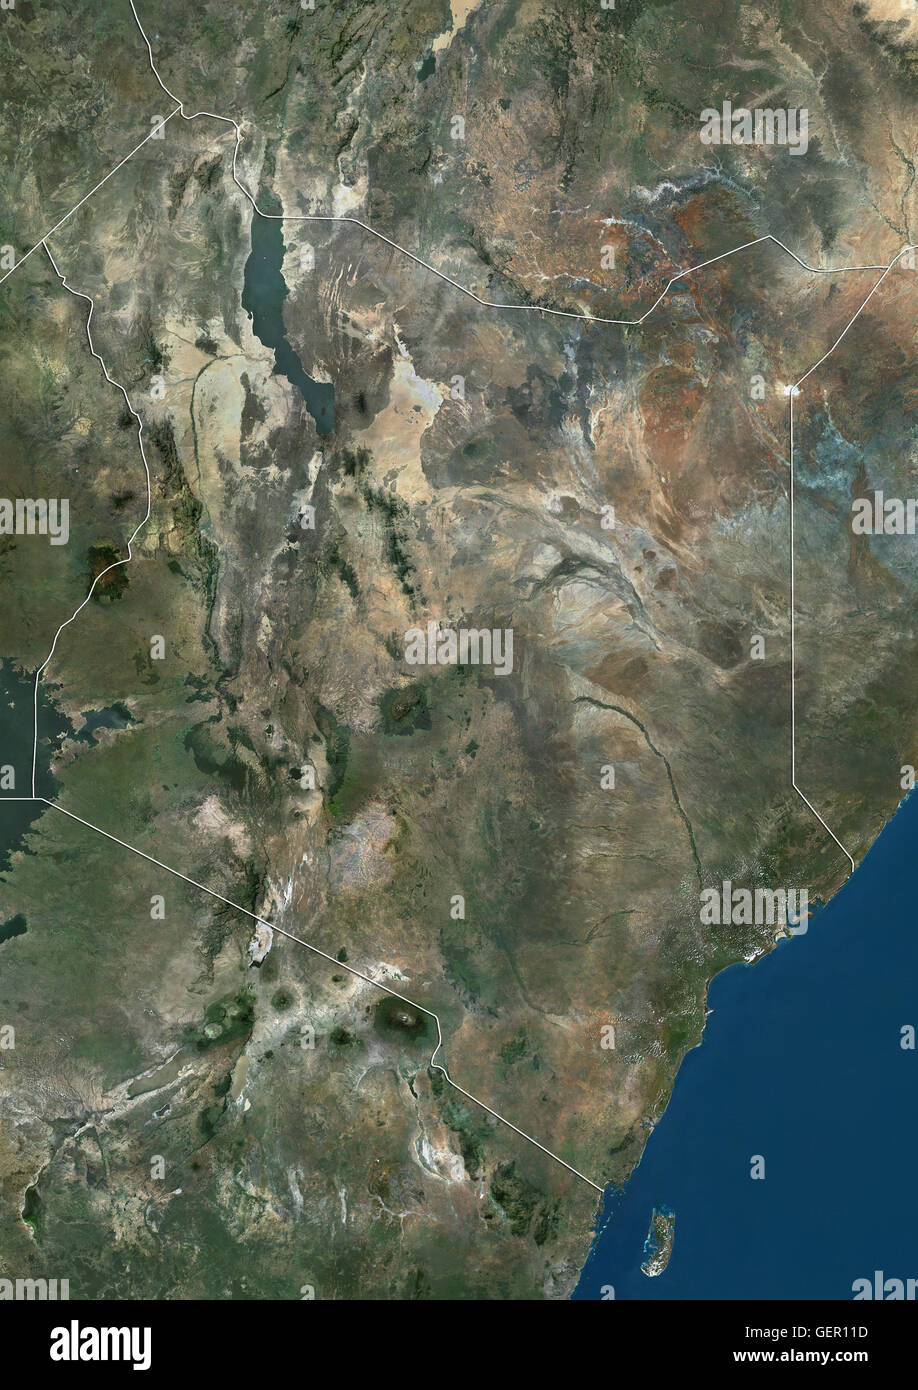 Satellitenansicht von Kenia (mit Ländergrenzen). Dieses Bild wurde aus Daten von Landsat-Satelliten erworben erstellt. Stockfoto